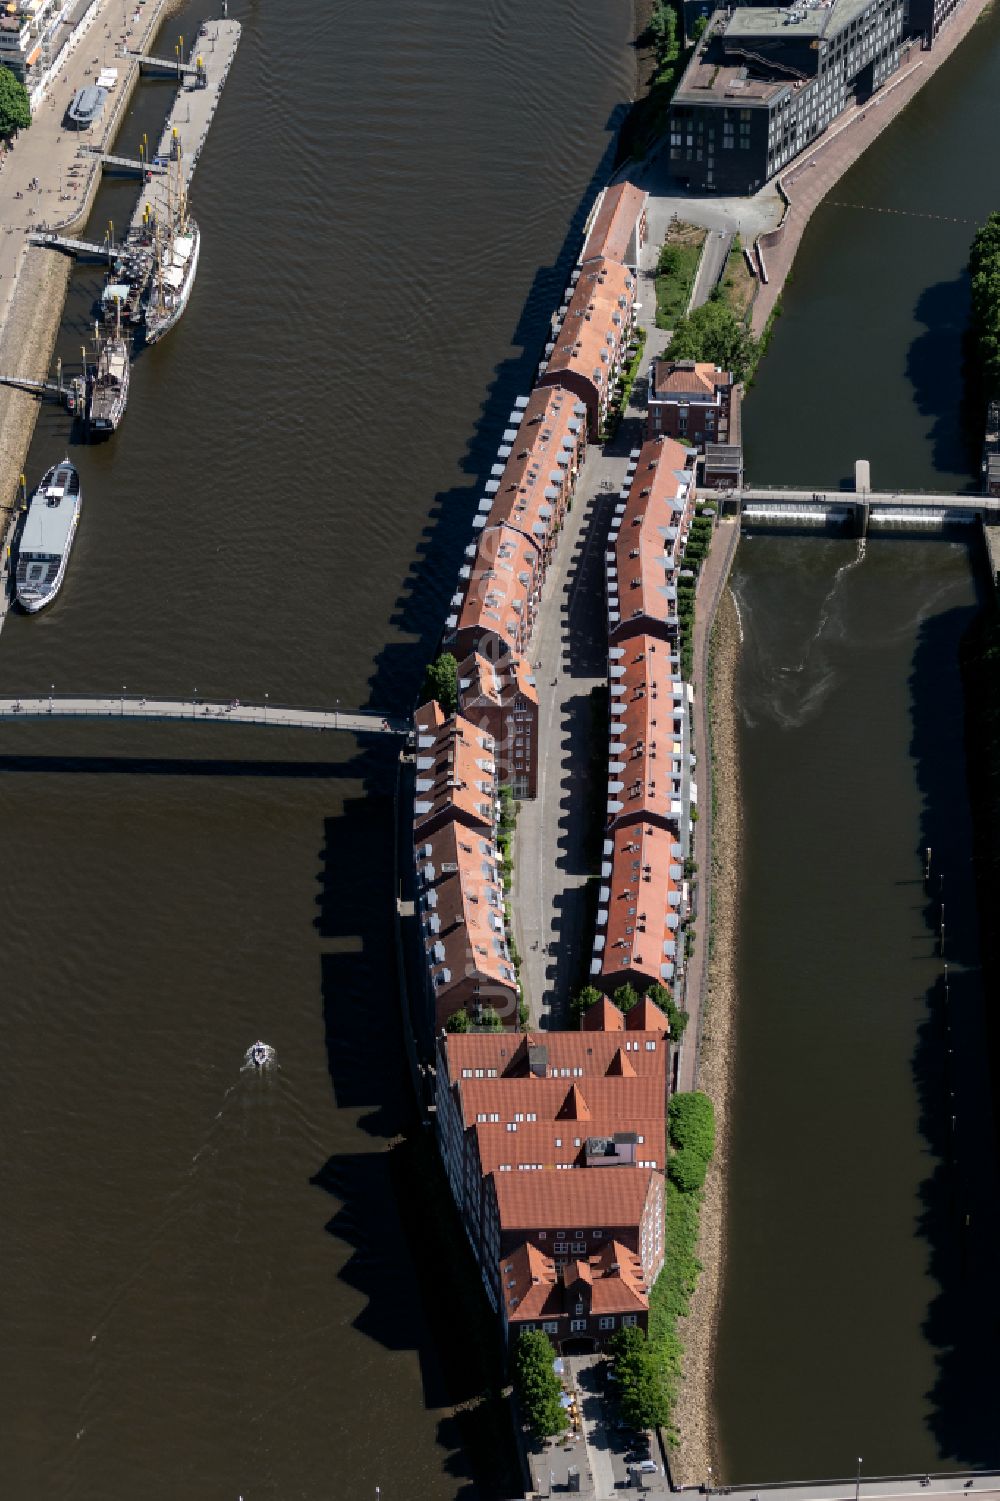 Bremen aus der Vogelperspektive: Halbinsel Teerhof zwischen dem Fluss Weser und der Kleinen Weser vor der Altstadt von Bremen